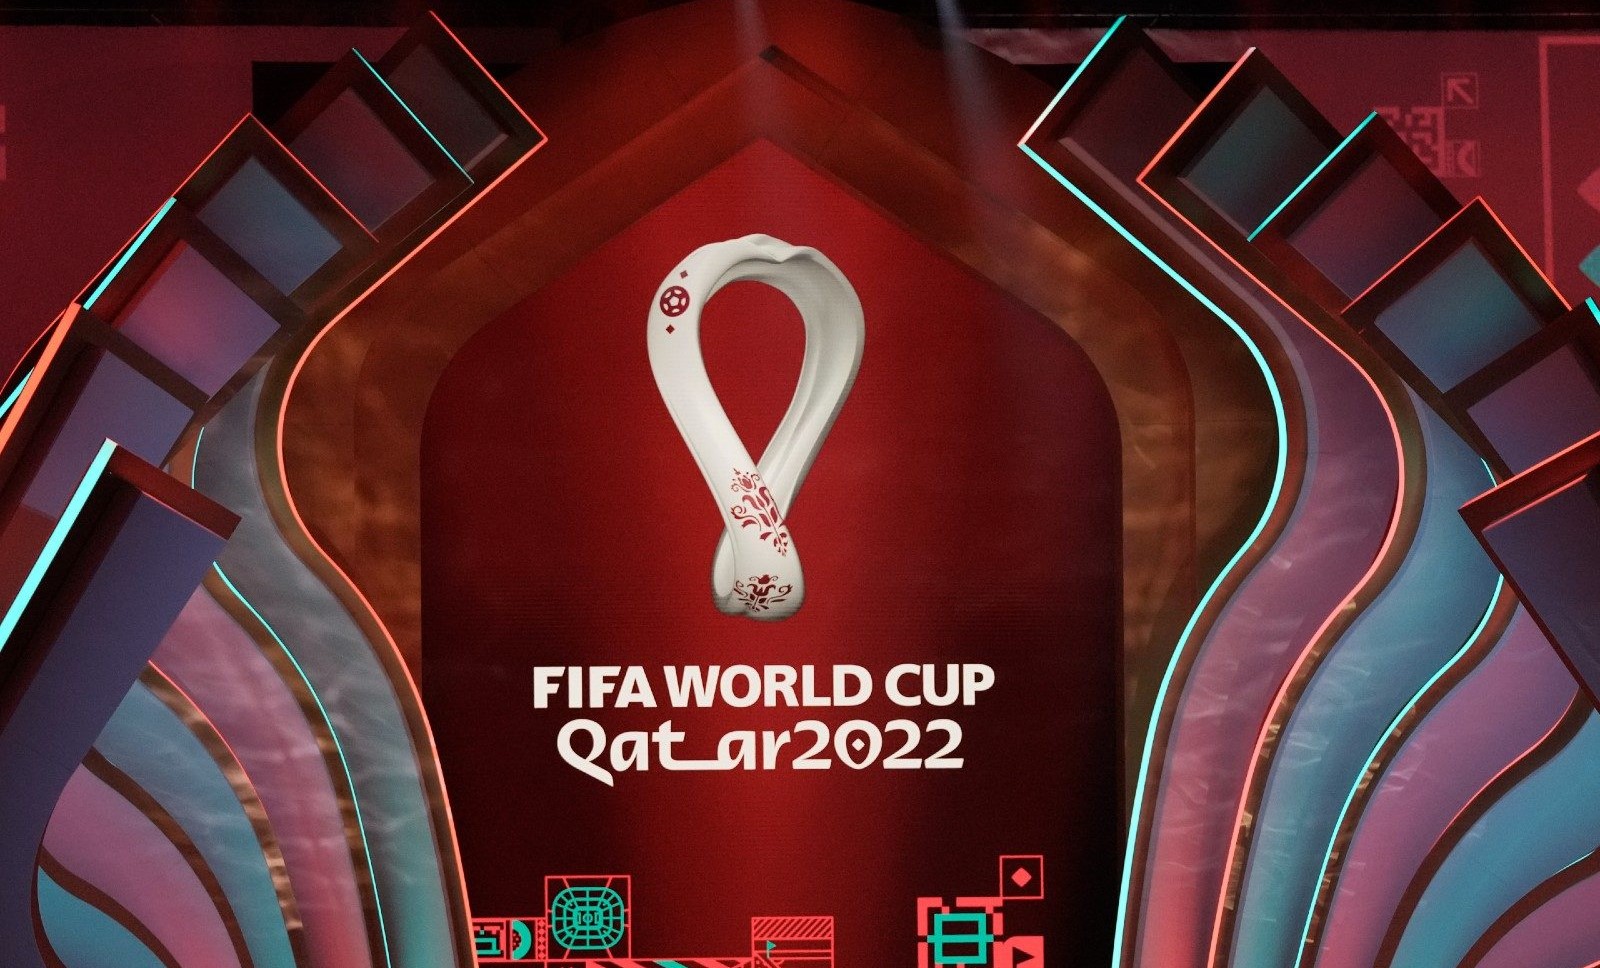 Giá mua bản quyền World Cup 2022 tại các quốc gia trên thế giới? - Ảnh 1.